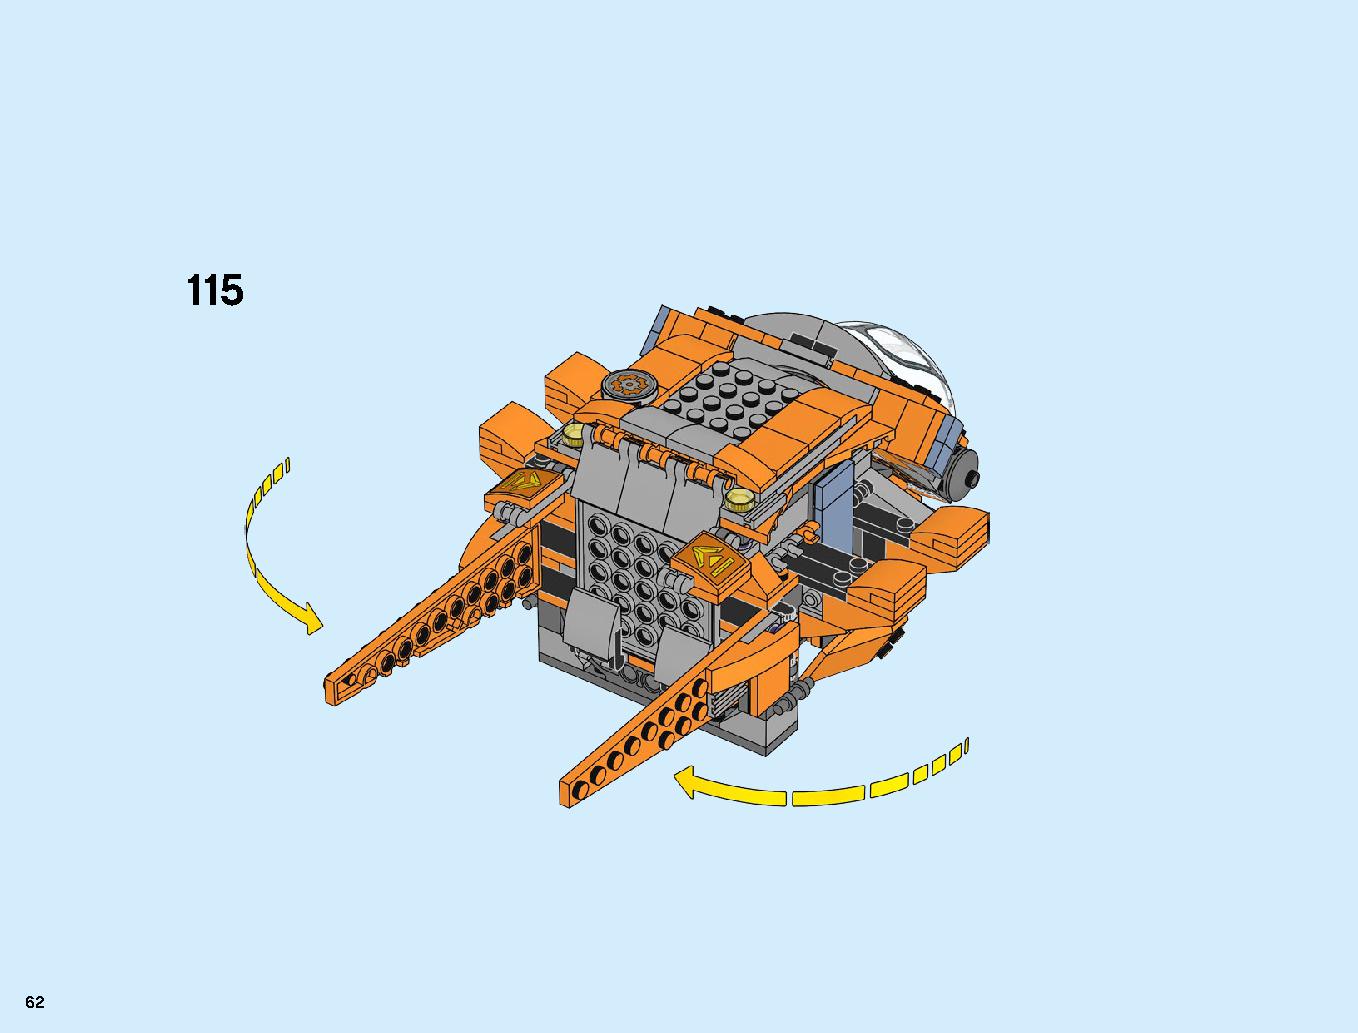 어벤져스 타노스: 최후의 전투 76107 레고 세트 제품정보 레고 조립설명서 62 page